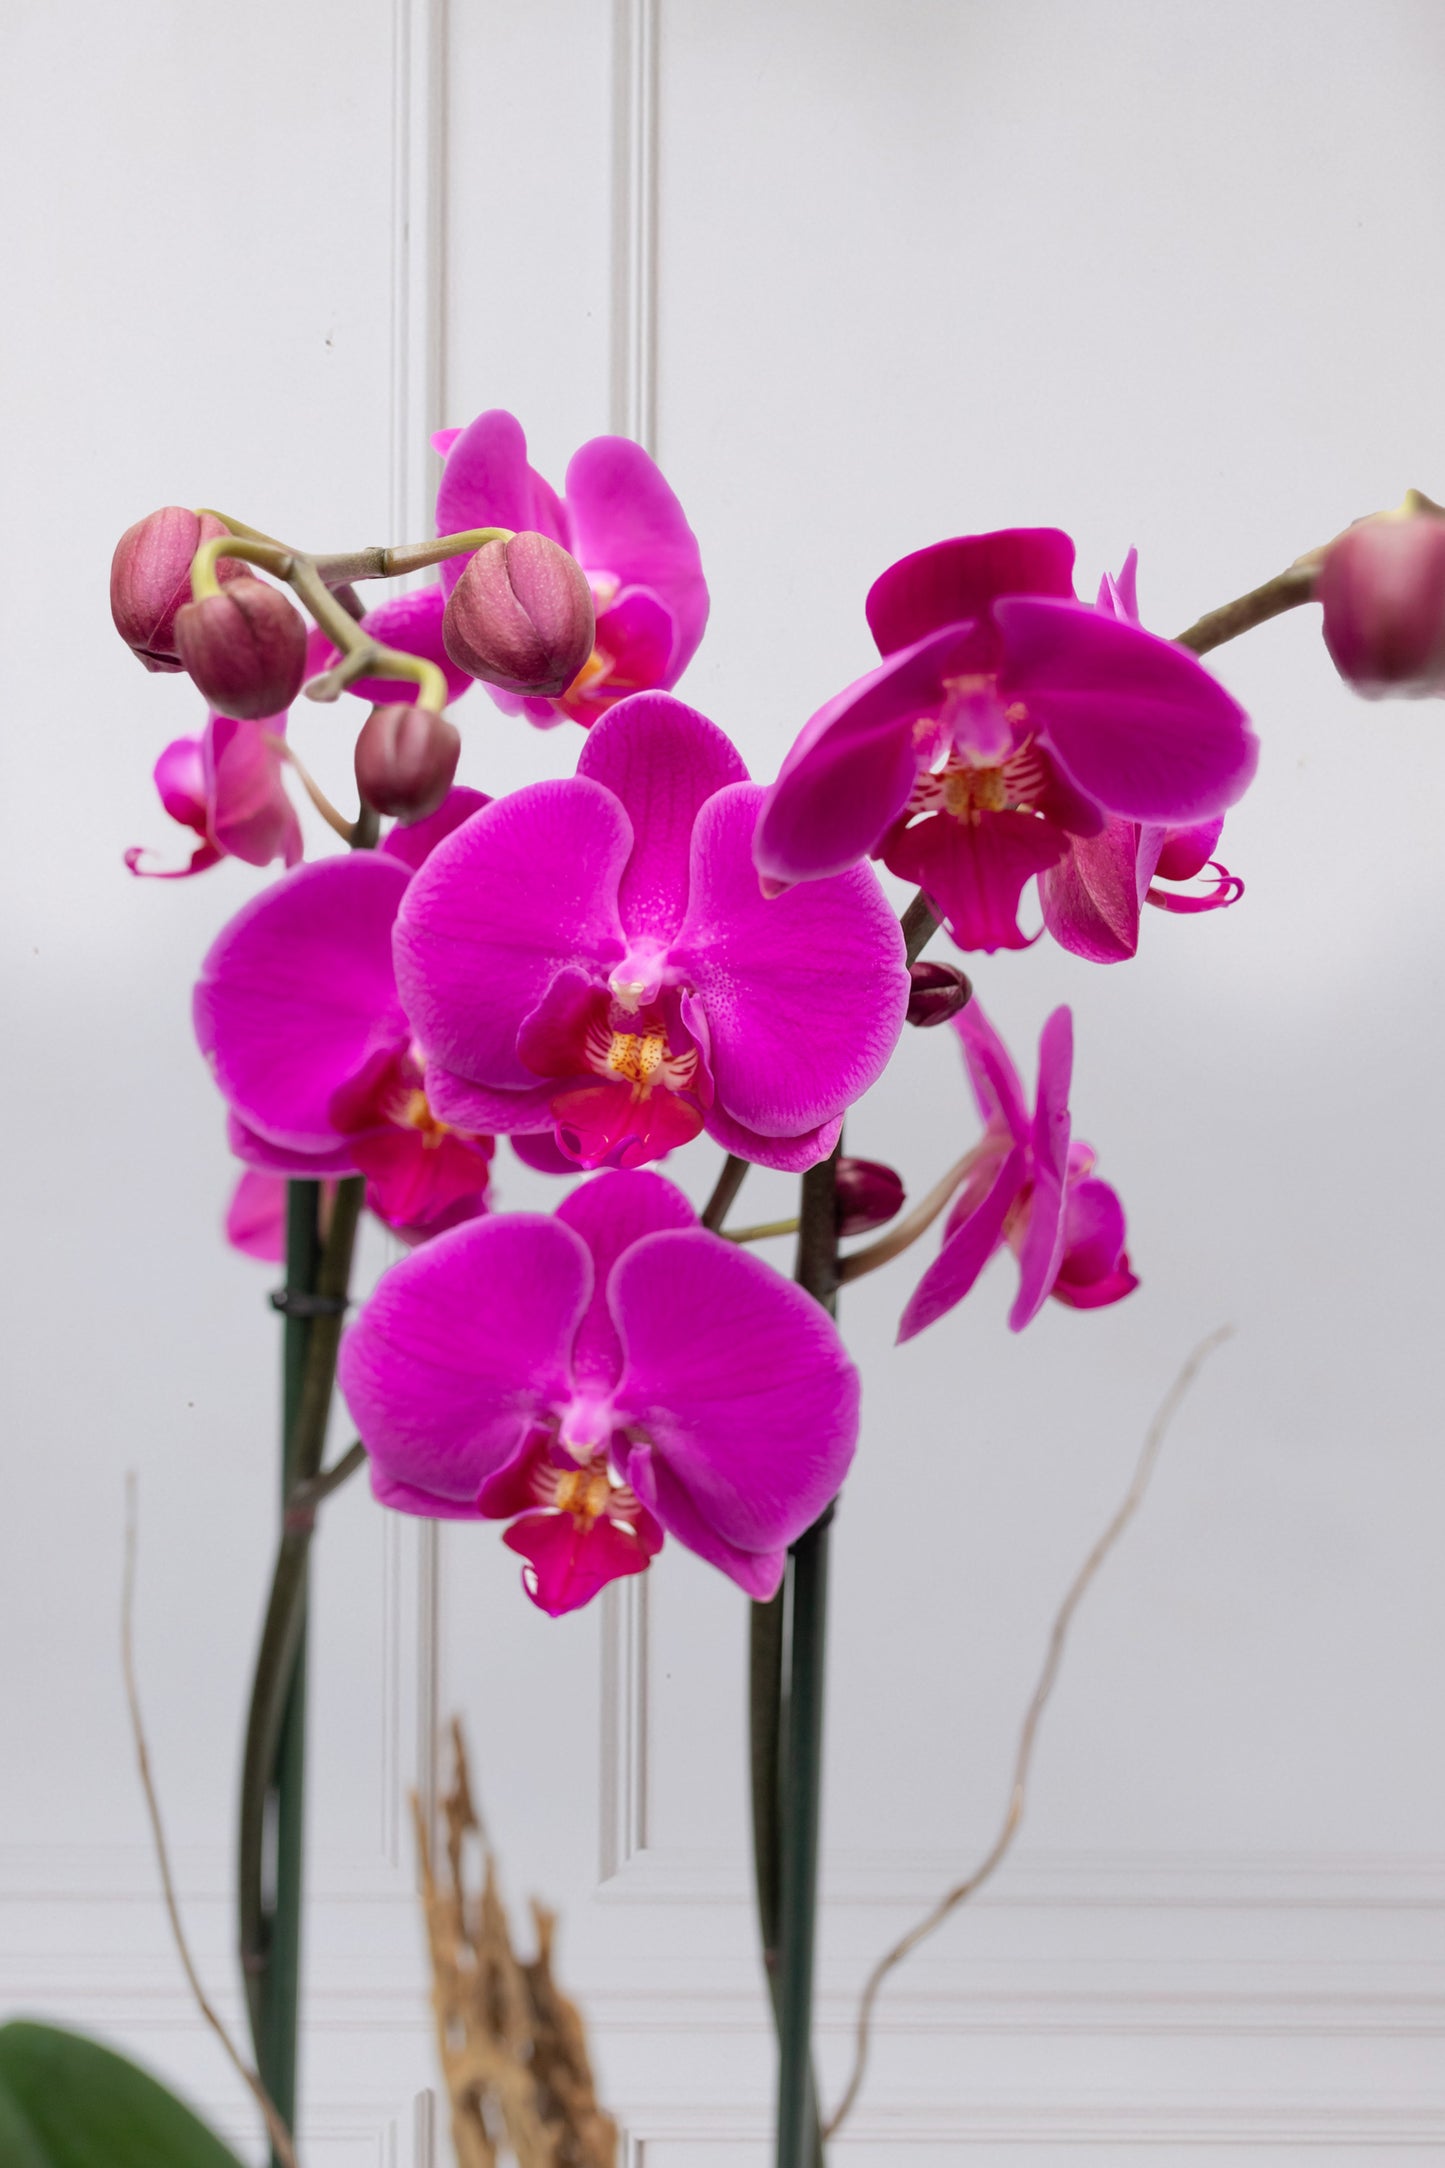 Orquídea Morada - Maceta Dorada, Vara de Curly y Esqueleto